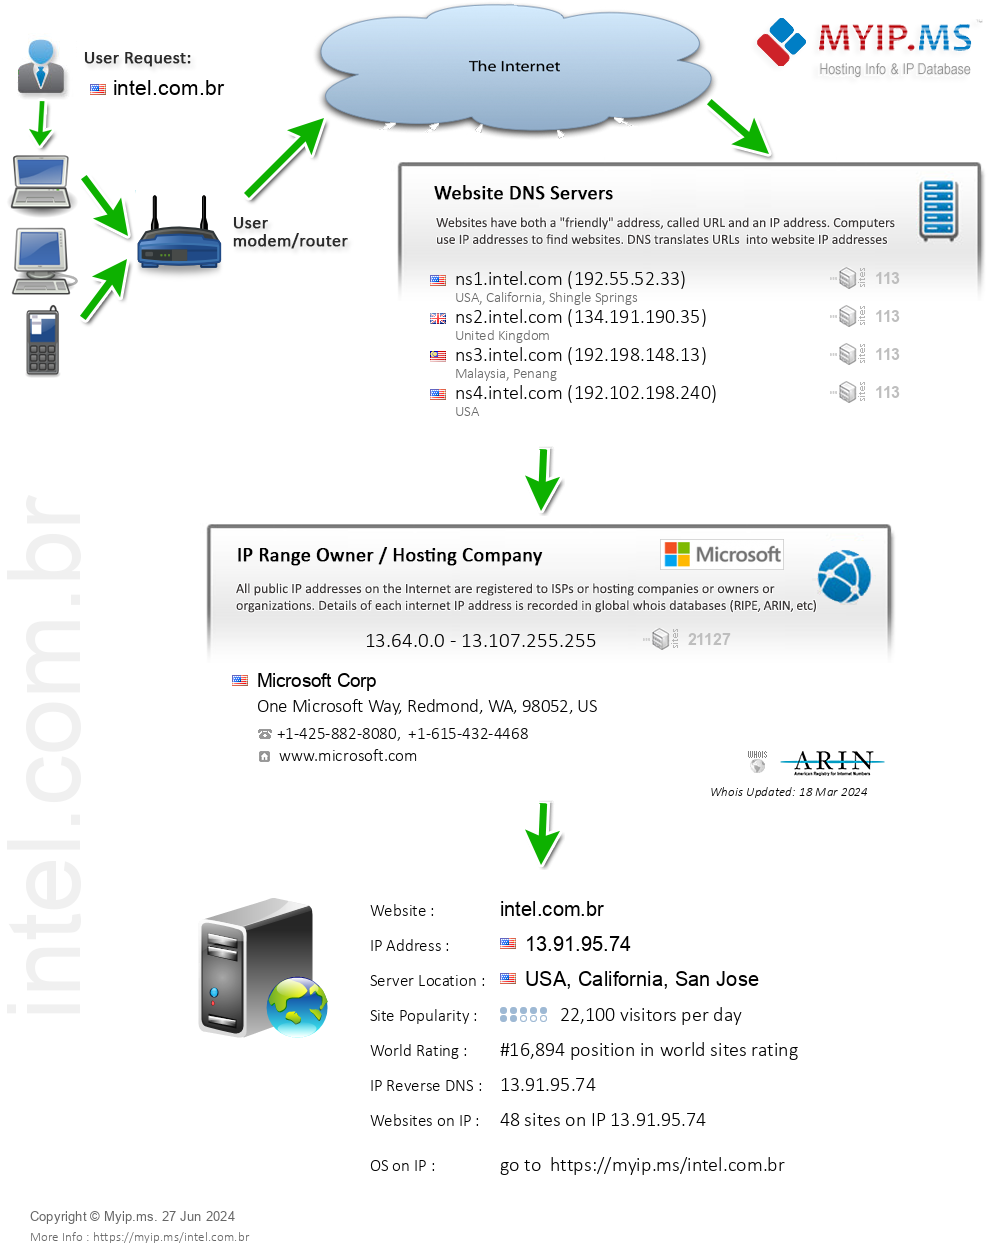 Intel.com.br - Website Hosting Visual IP Diagram